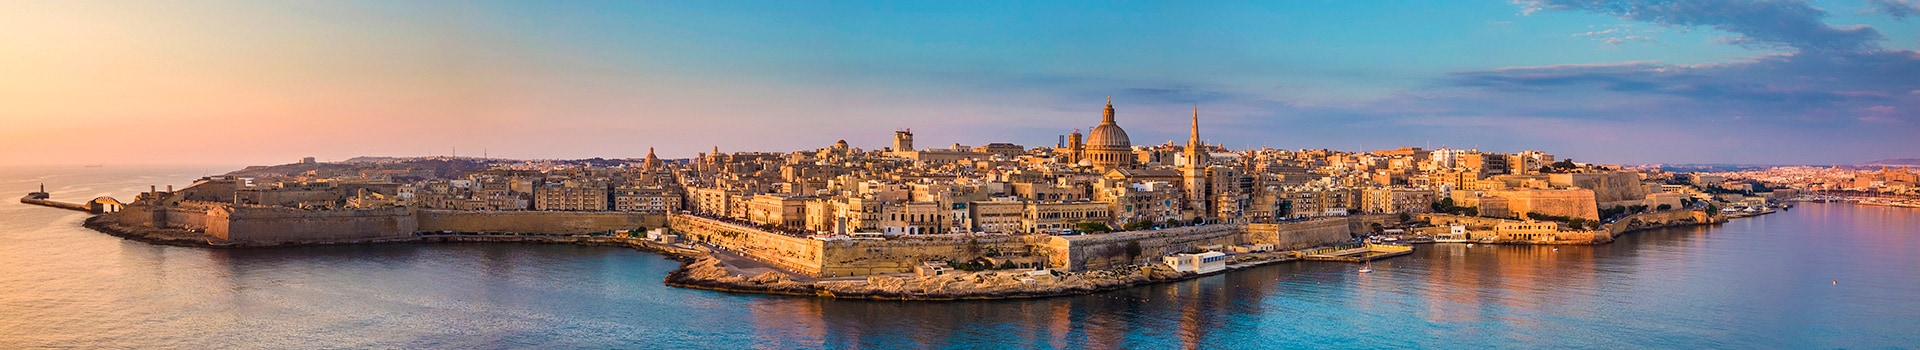 Nápoles - Malta